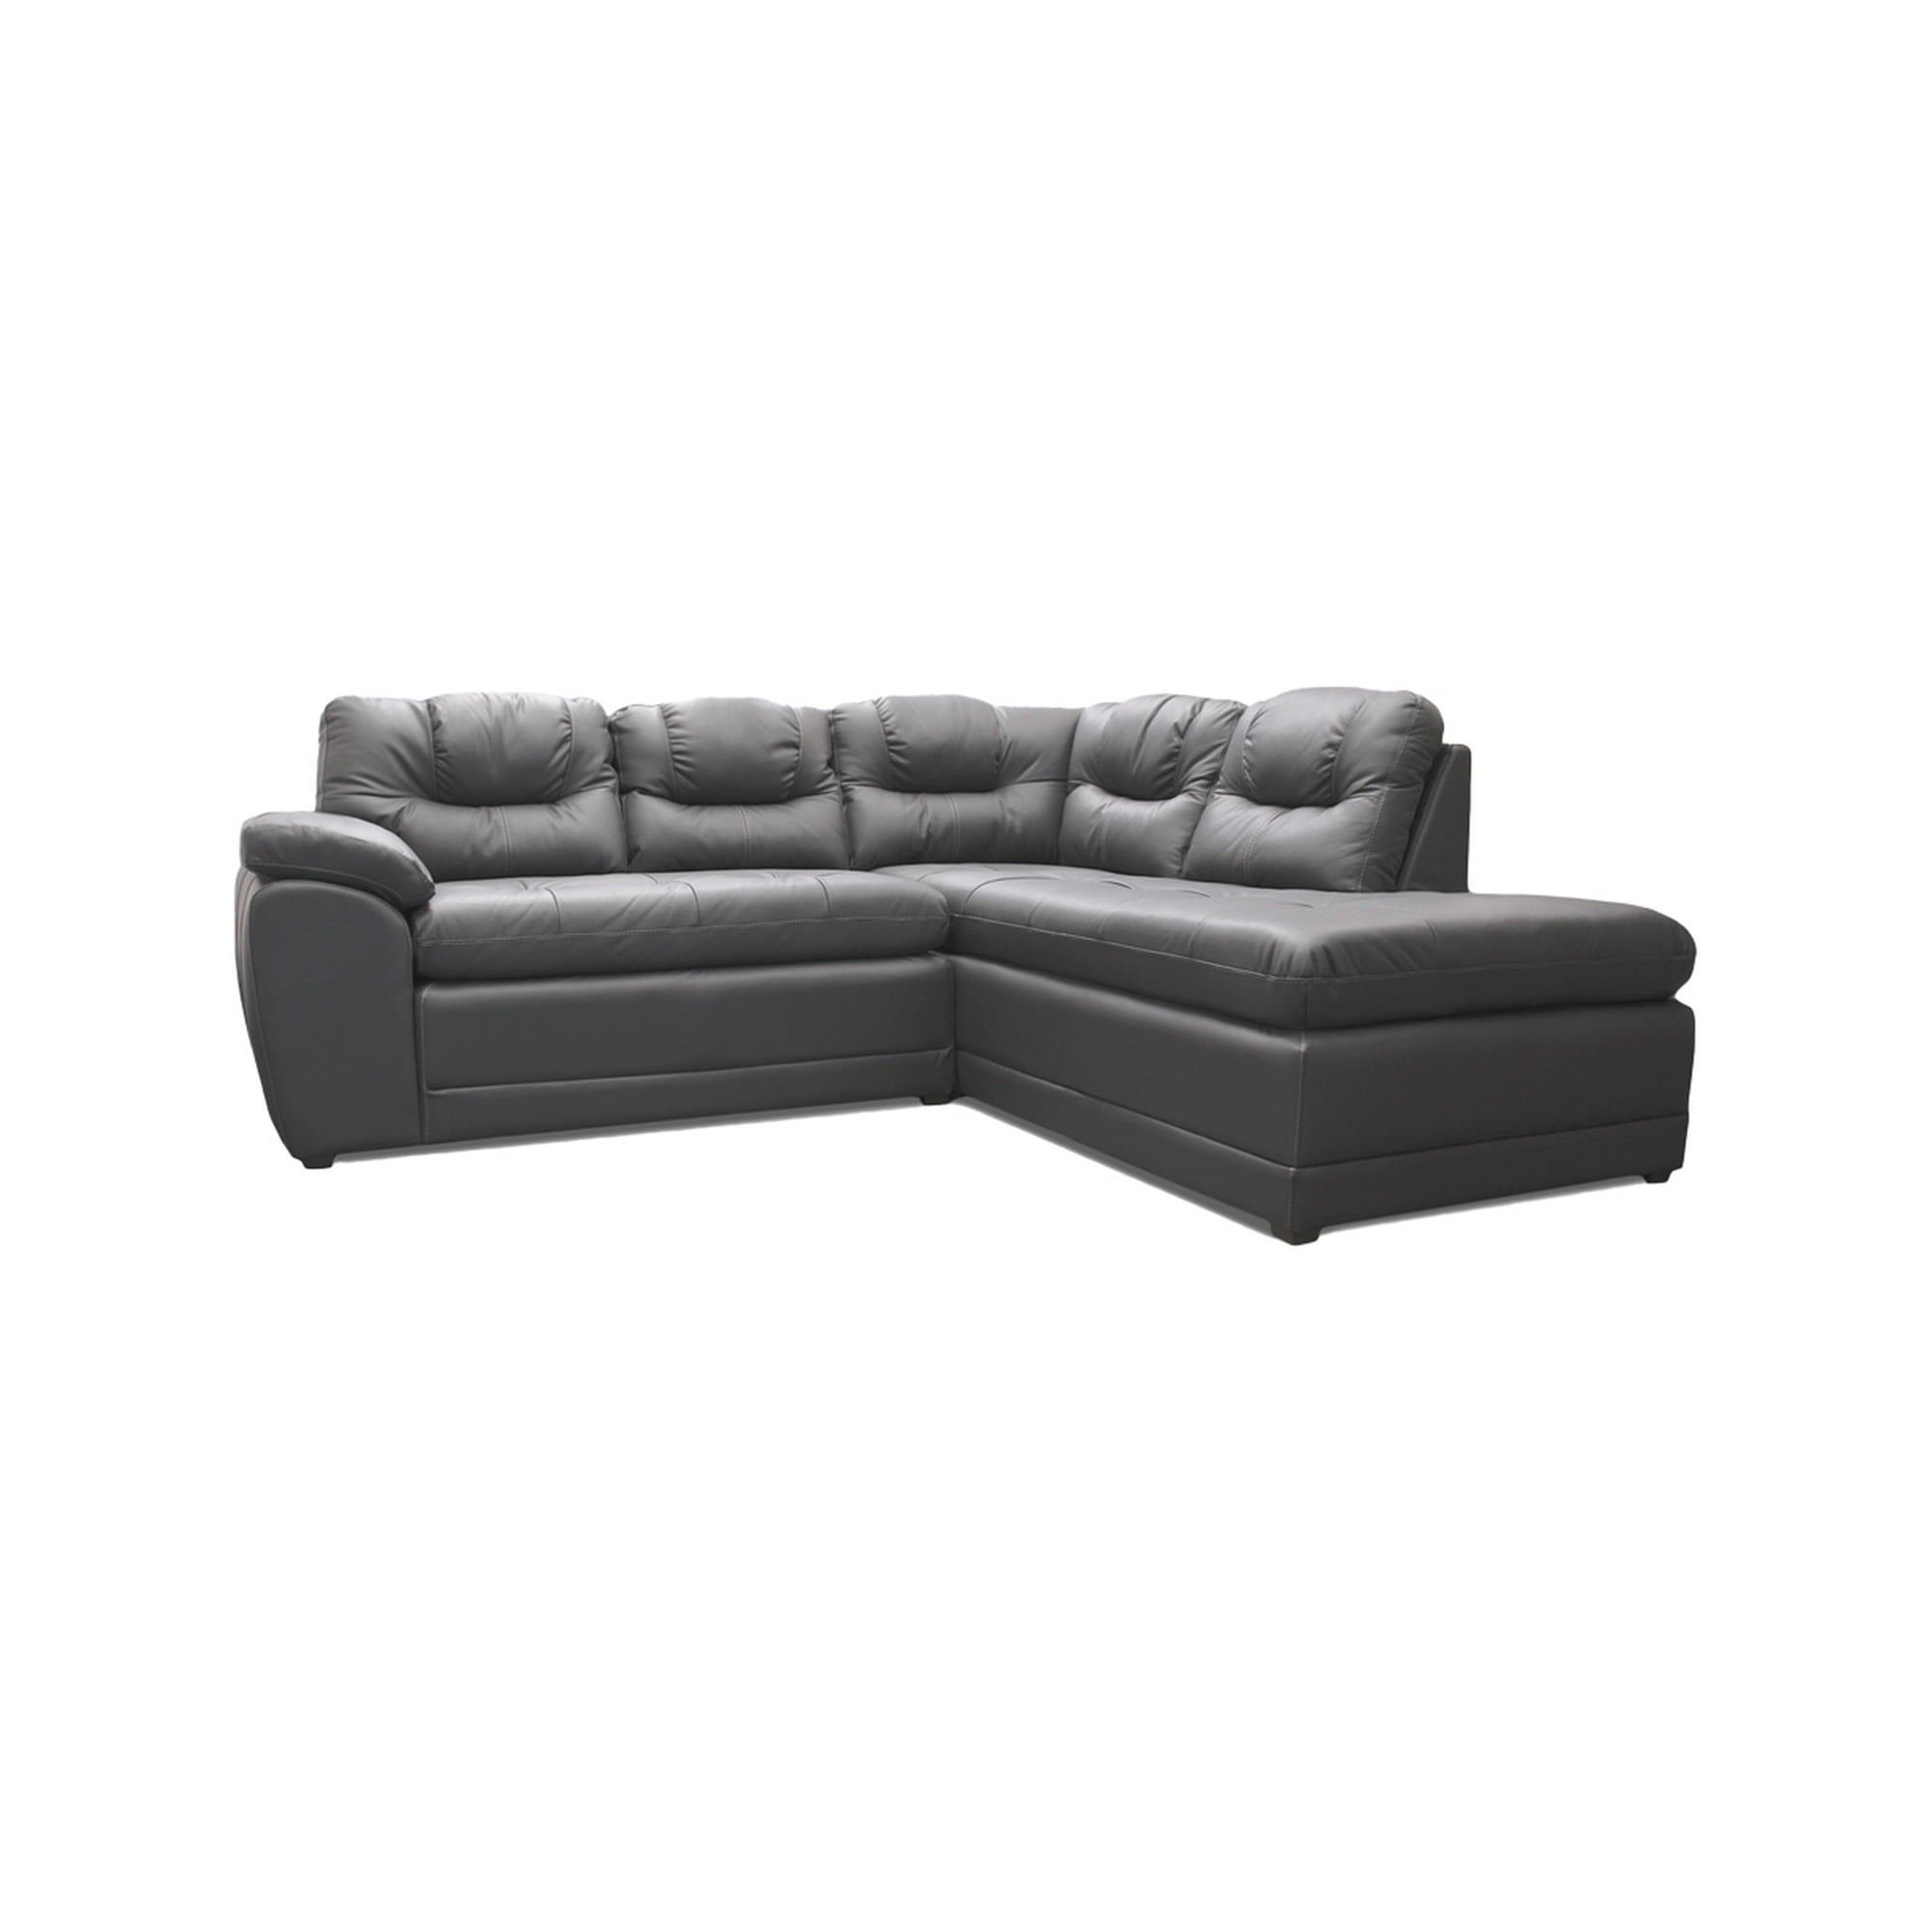 Sala esquinera sevilla de piel genuina sofá y cheise long derecho gris oxford confortopiel sevilla